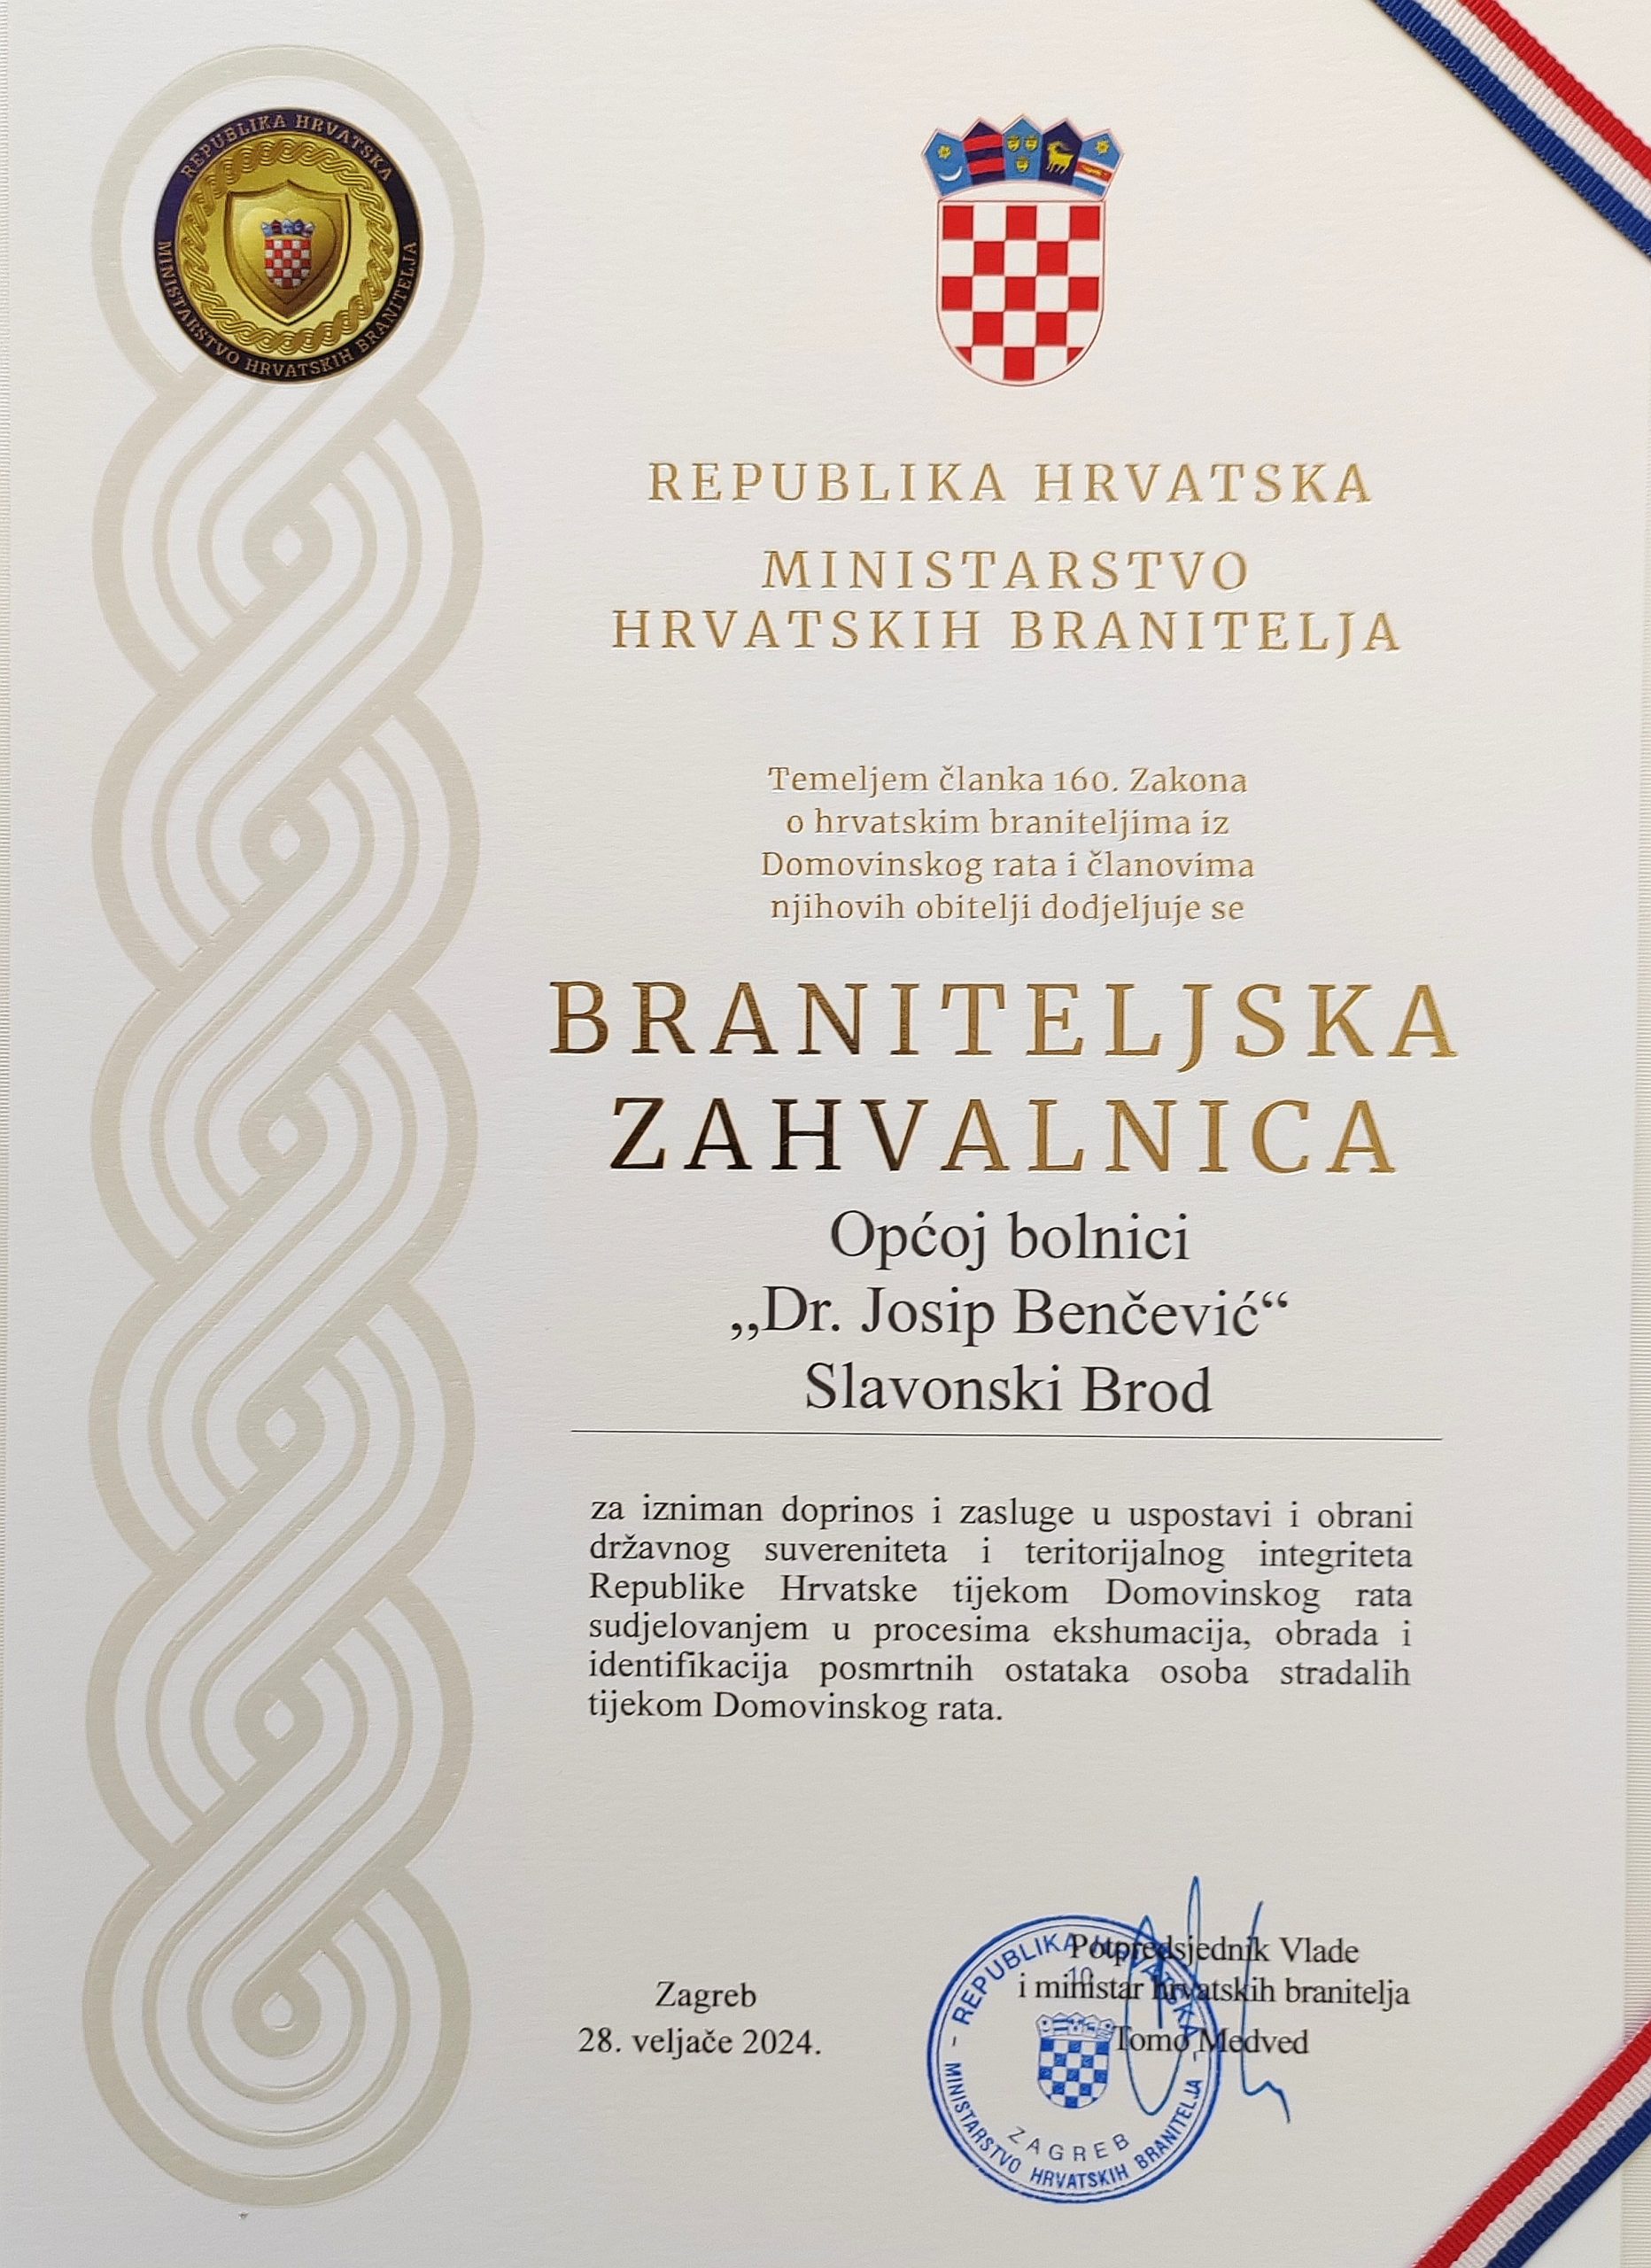 Općoj bolnici Dr. Josip Benčević Slavonski Brod uručena braniteljska zahvalnica